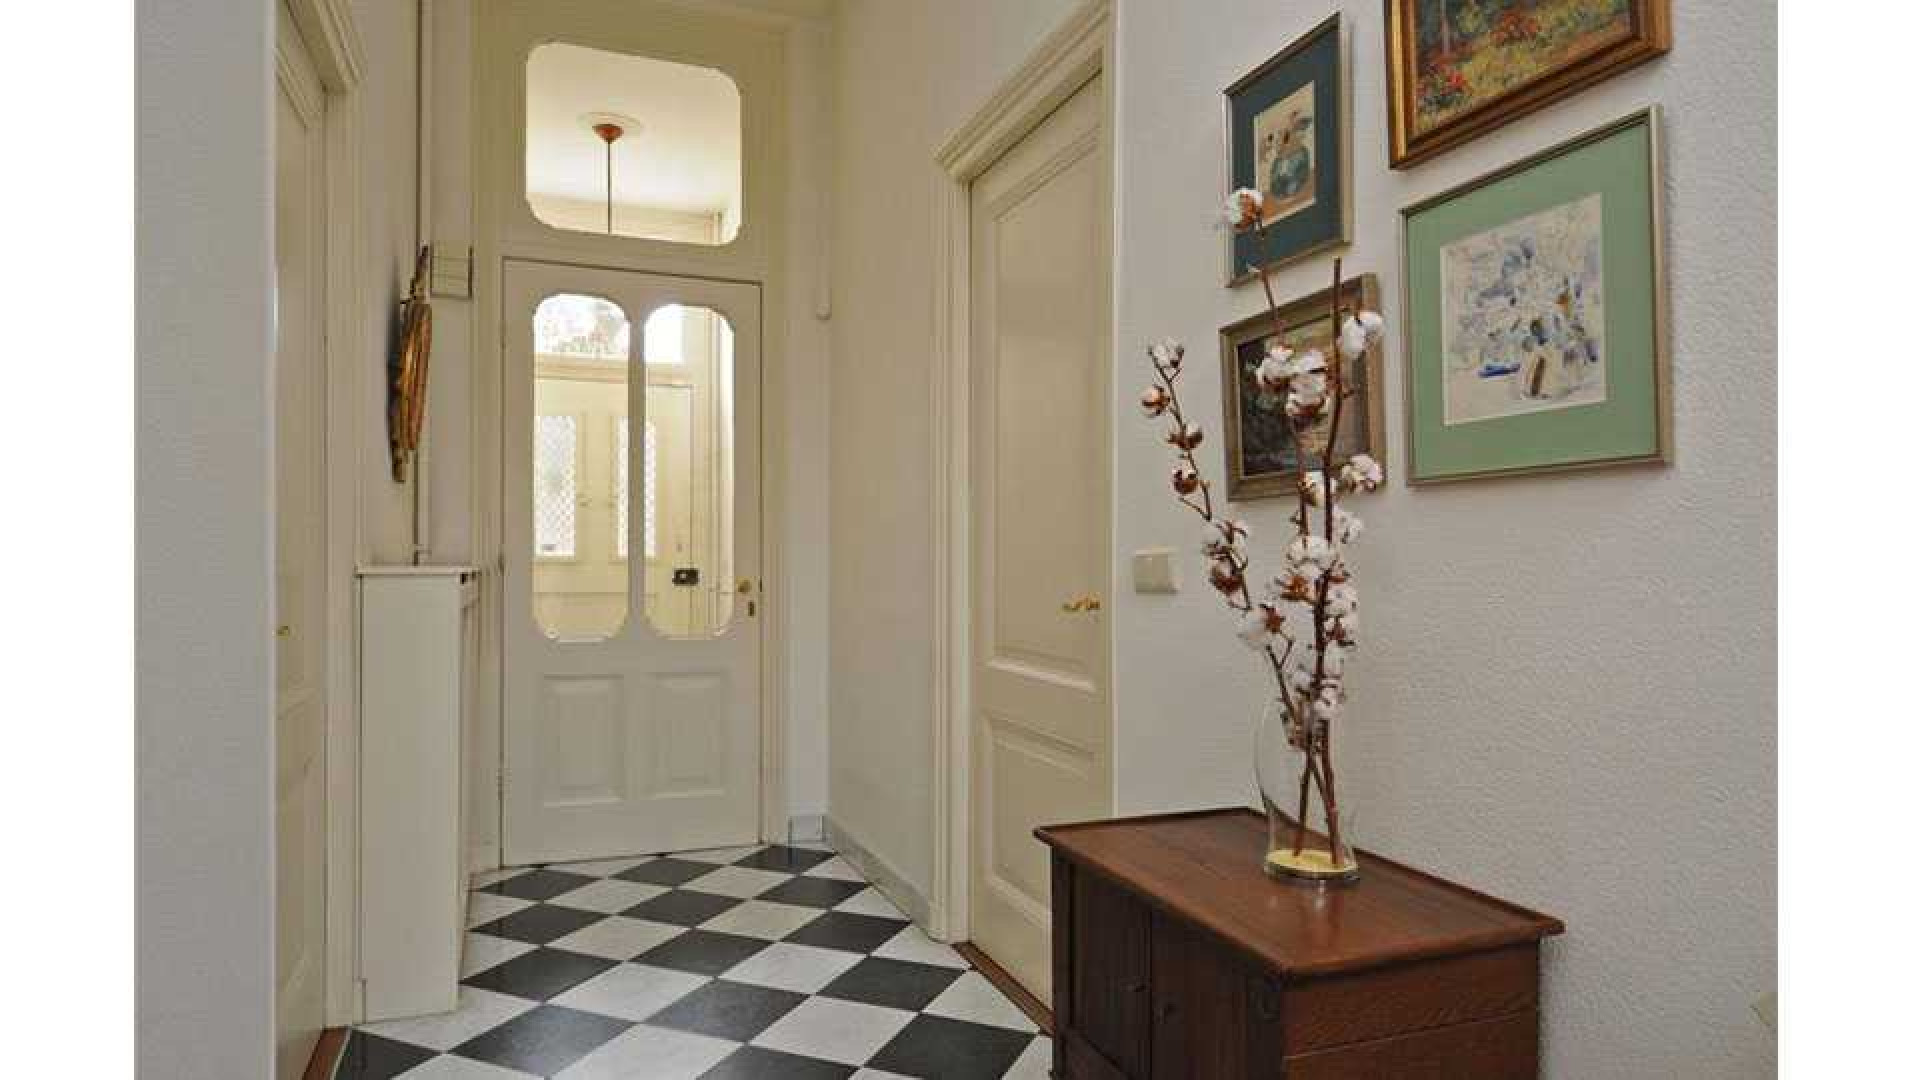 Frits Sissing scoort vette winst op verkoop van zijn oude huis. Zie foto's 4